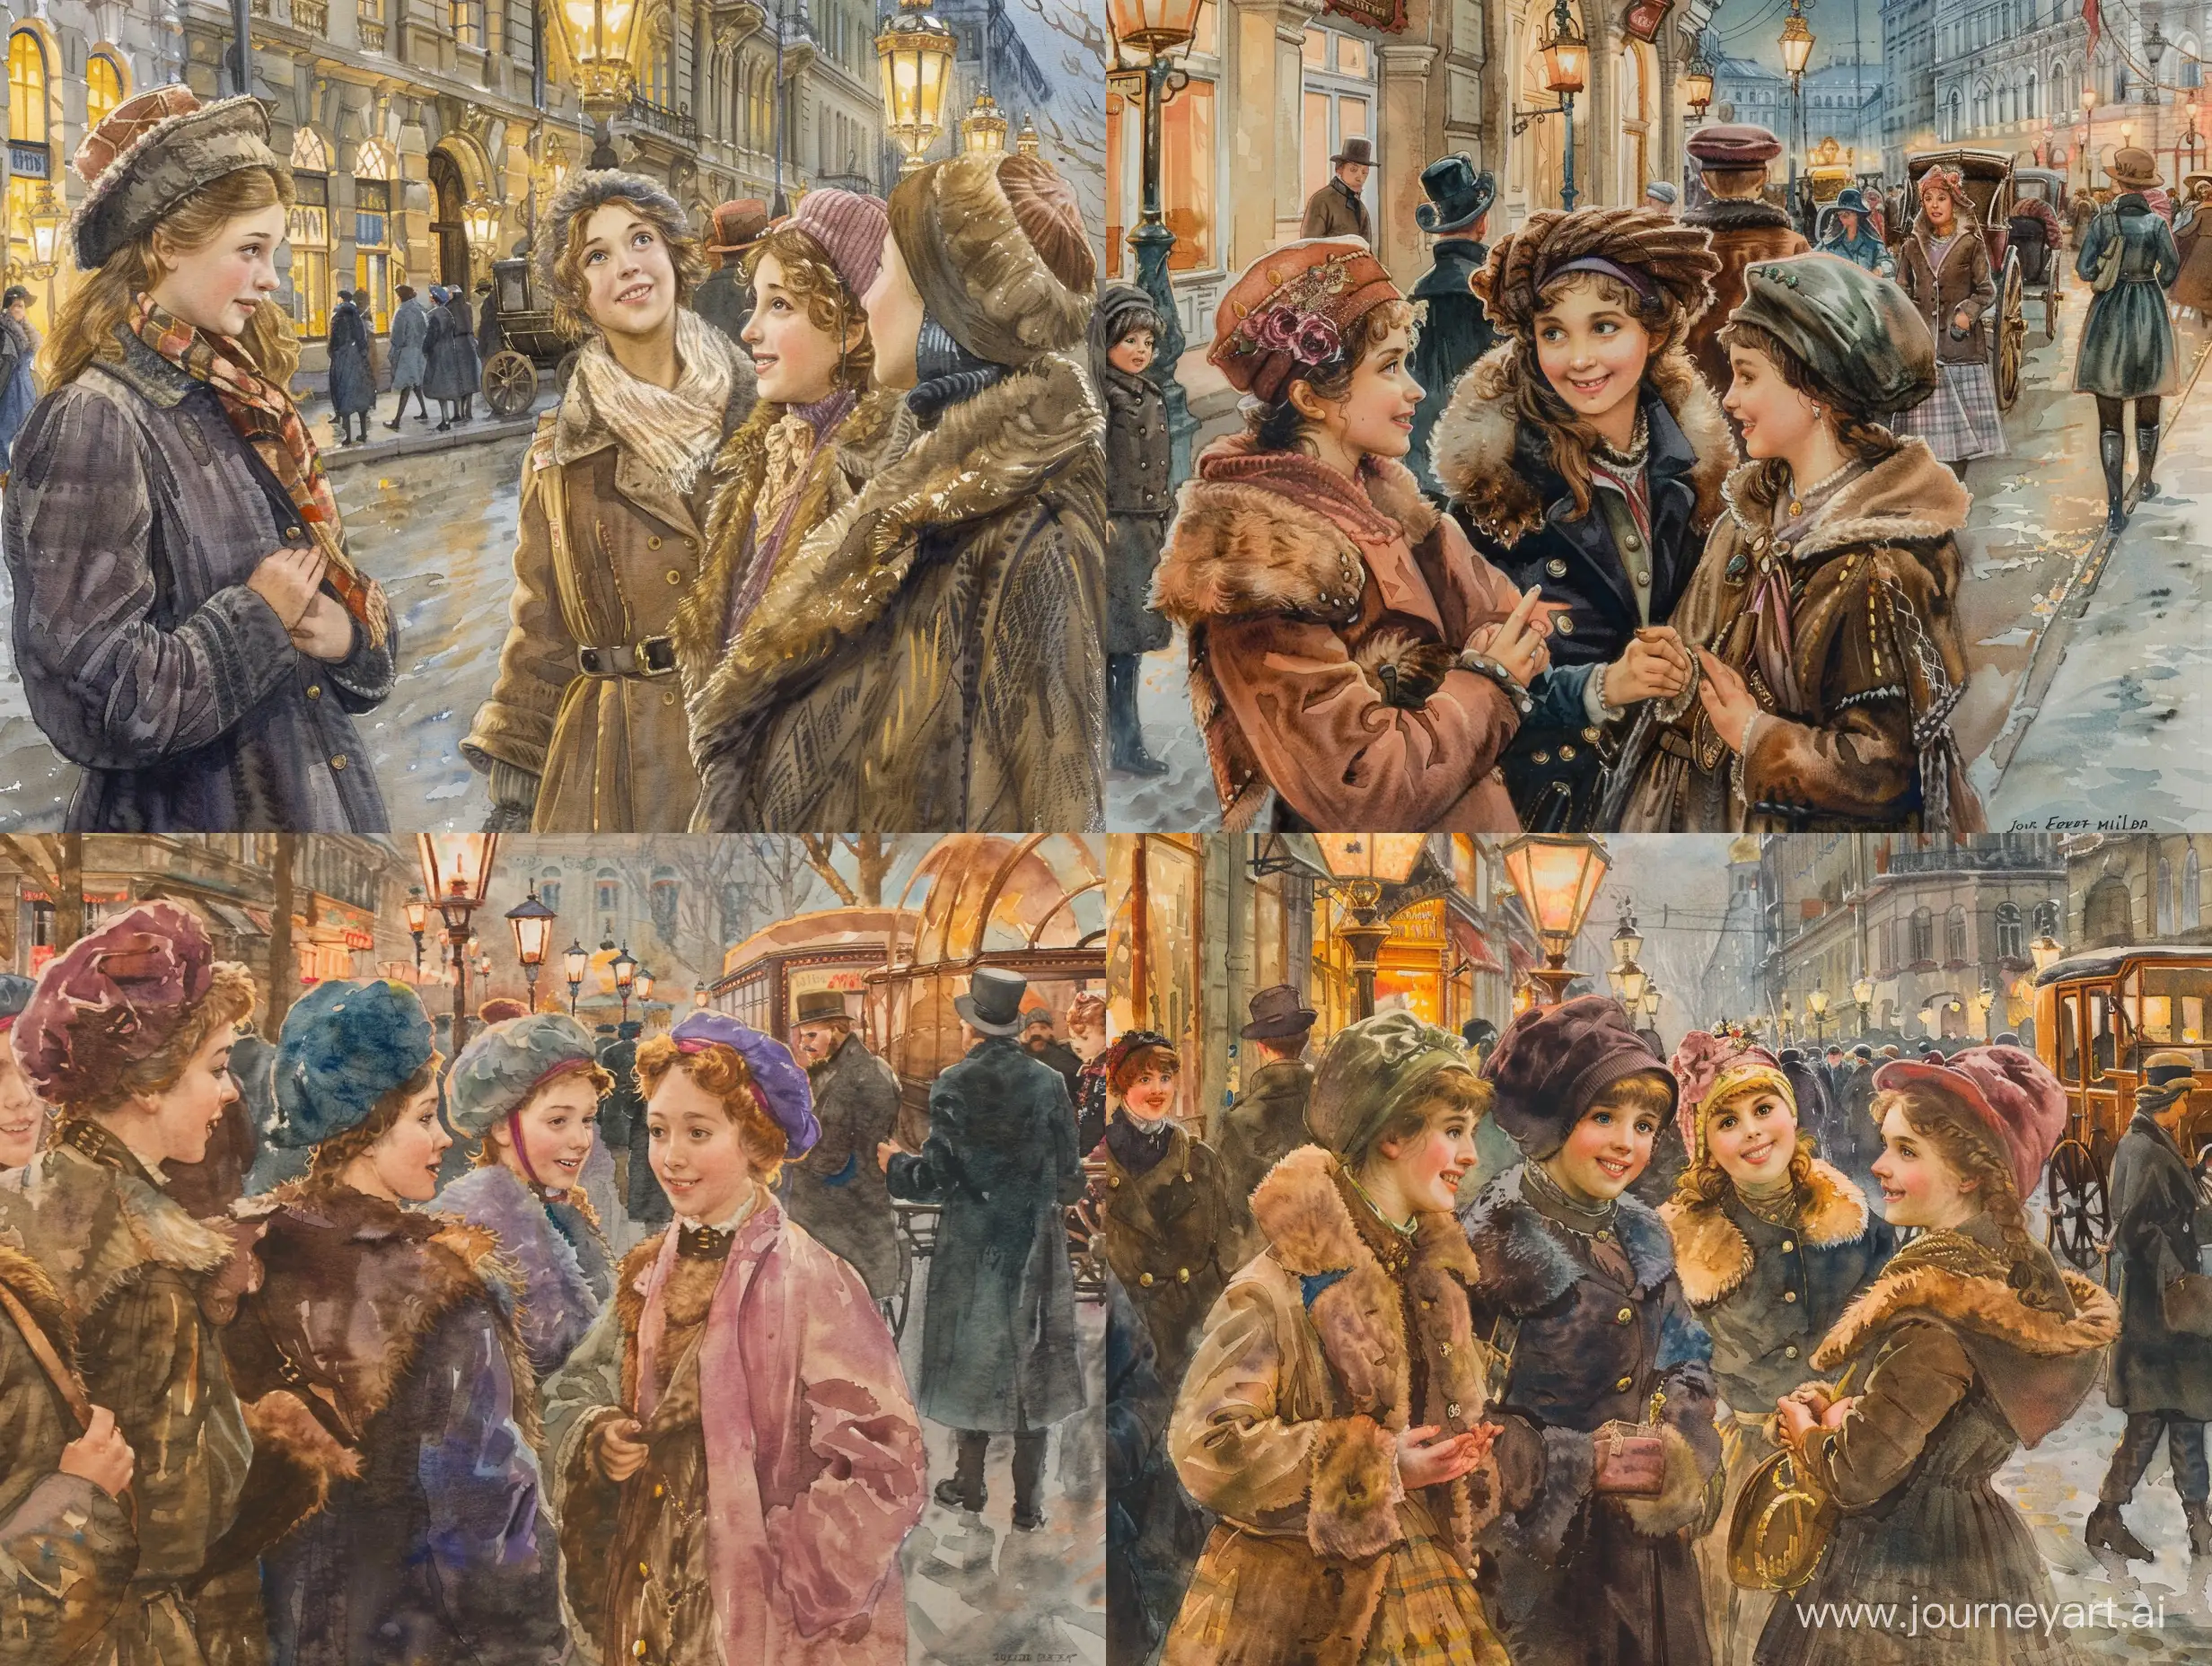 Группа молодых модных девушек жительниц Петербурга гуляют по улице города. На улице Санкт-Петербурга с фонарями, прохожими, магазинами, каретами и извозчиками. Девушки общаются друг с другом и им весело. Девушки одеты тепло и красиво по моде 1910 года. На них тёплые головные уборы и шубки с мехом или пальто. Акварель в стиле и цвете John Everett Millais. Действие происходит на улице Санкт-Петербурга 1910 года.